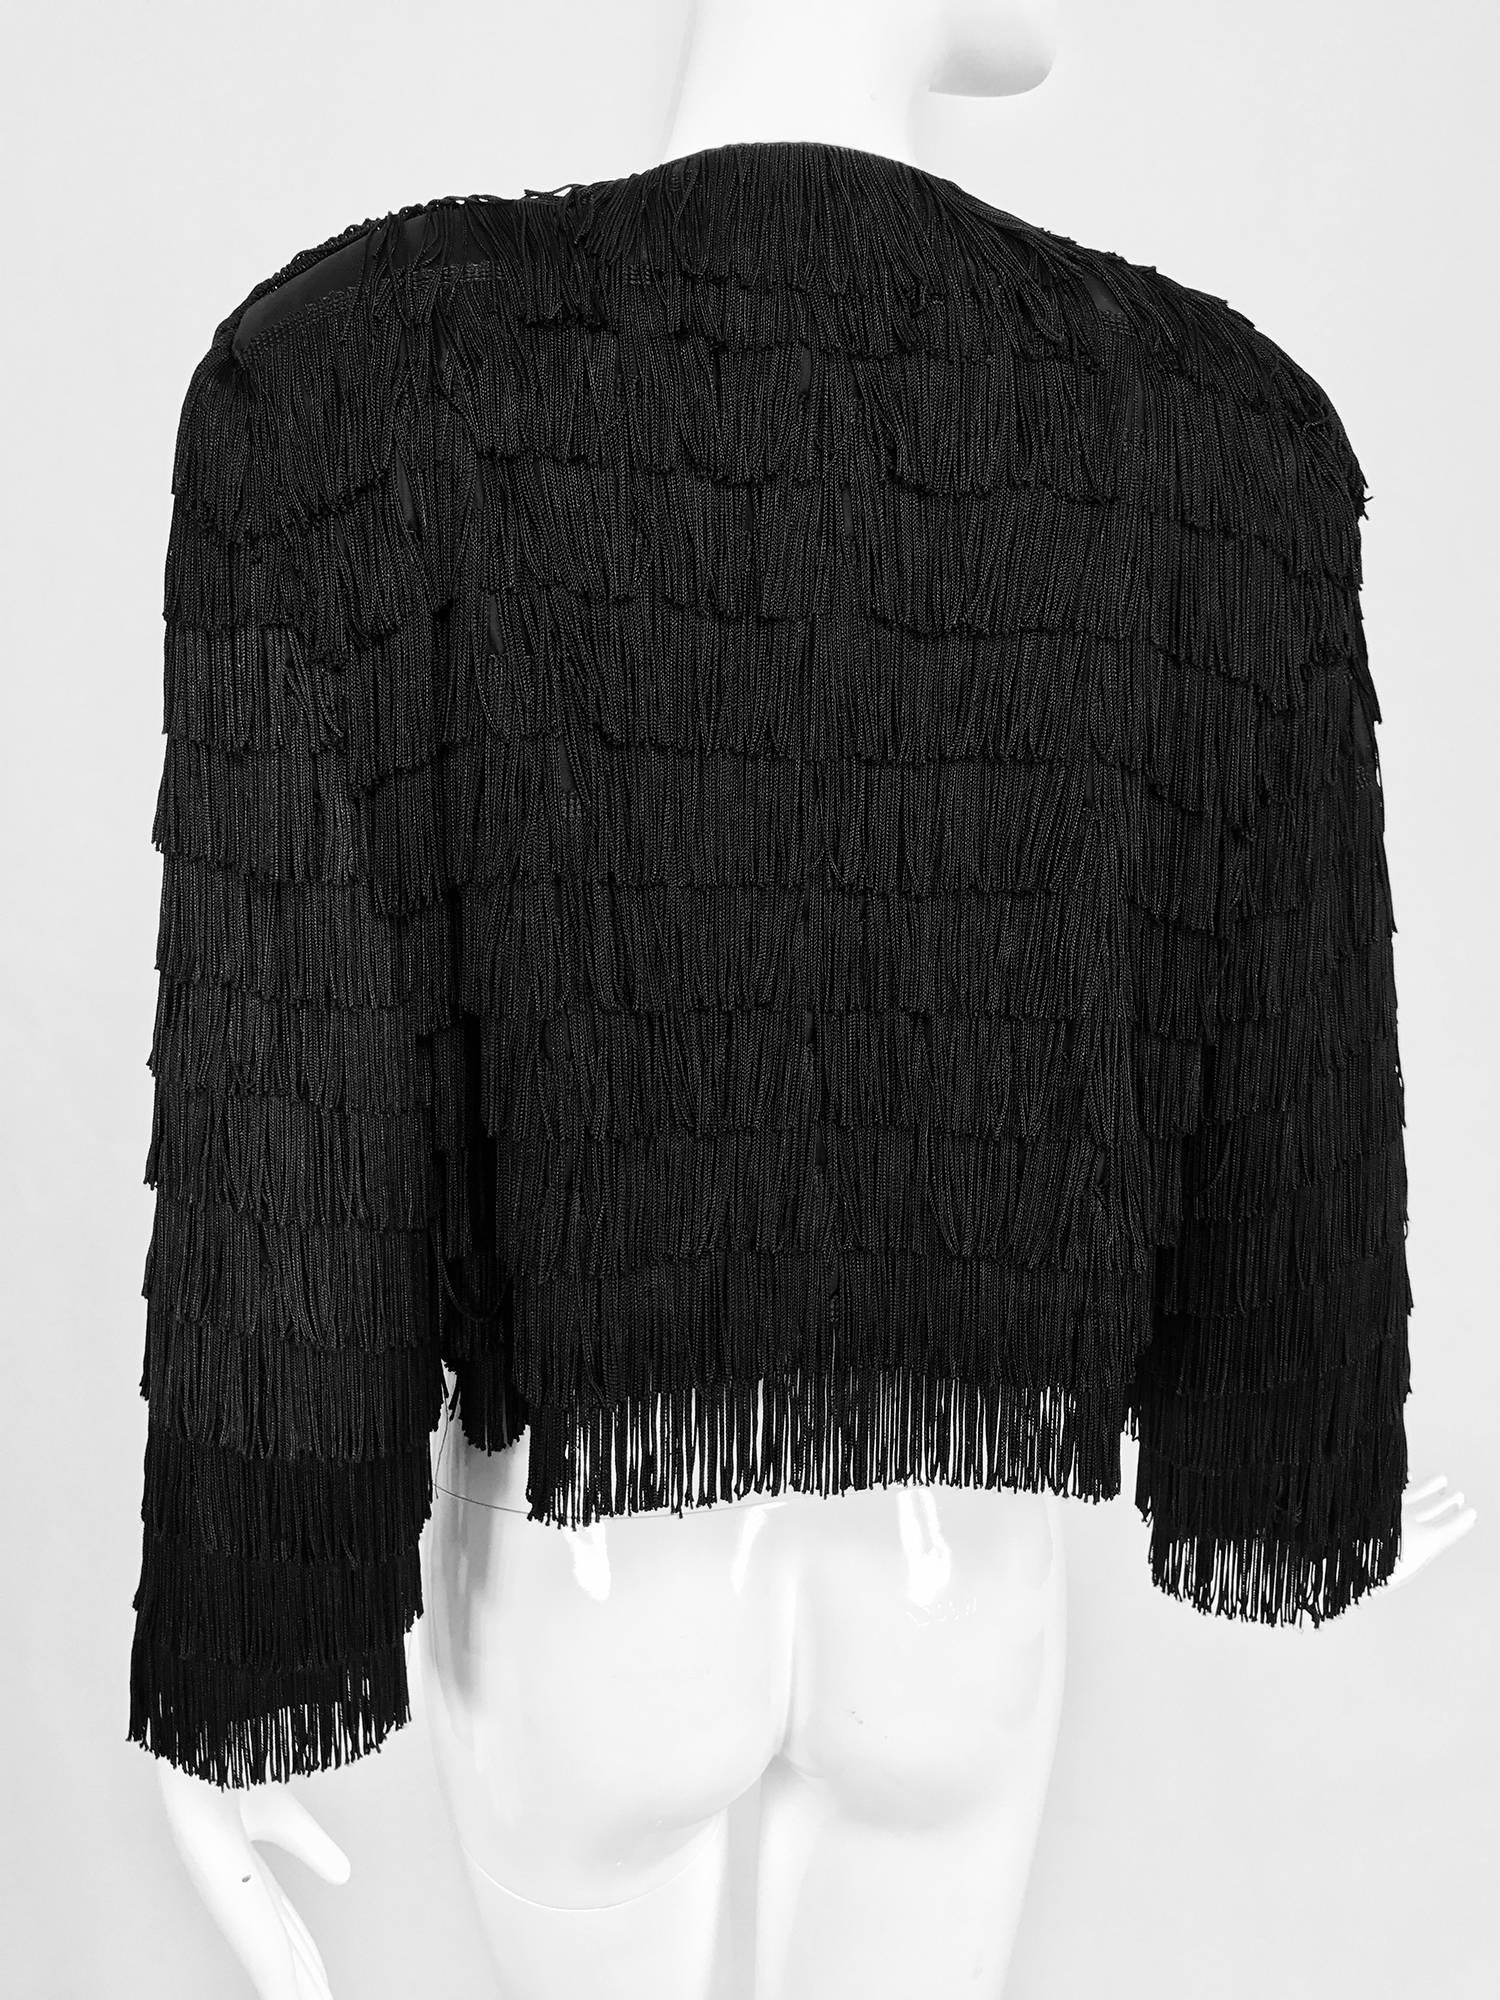 Dramatic Black crepe totally fringed jacket 1980s 1